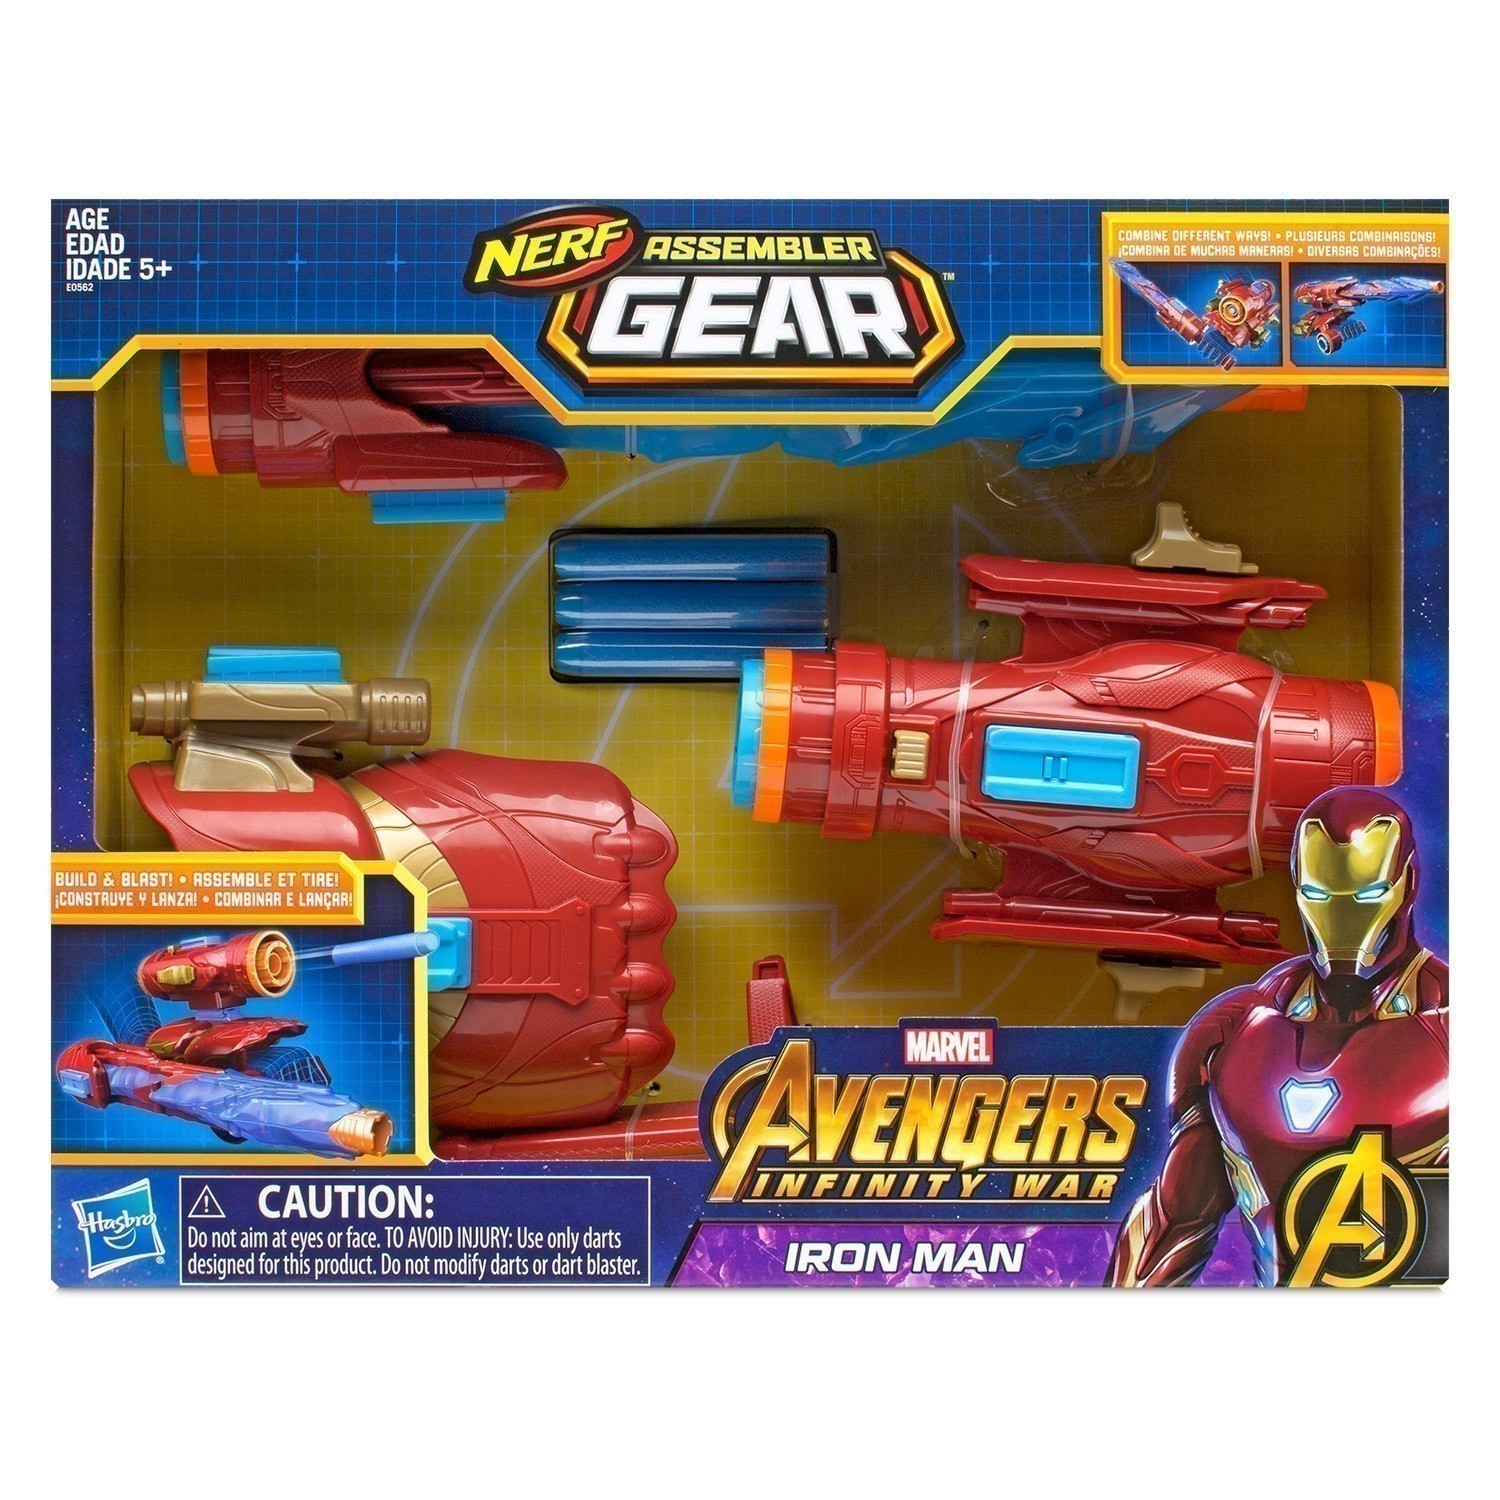 Nerf Assembler Gear - Marvel Avengers Infinity War - Iron Man